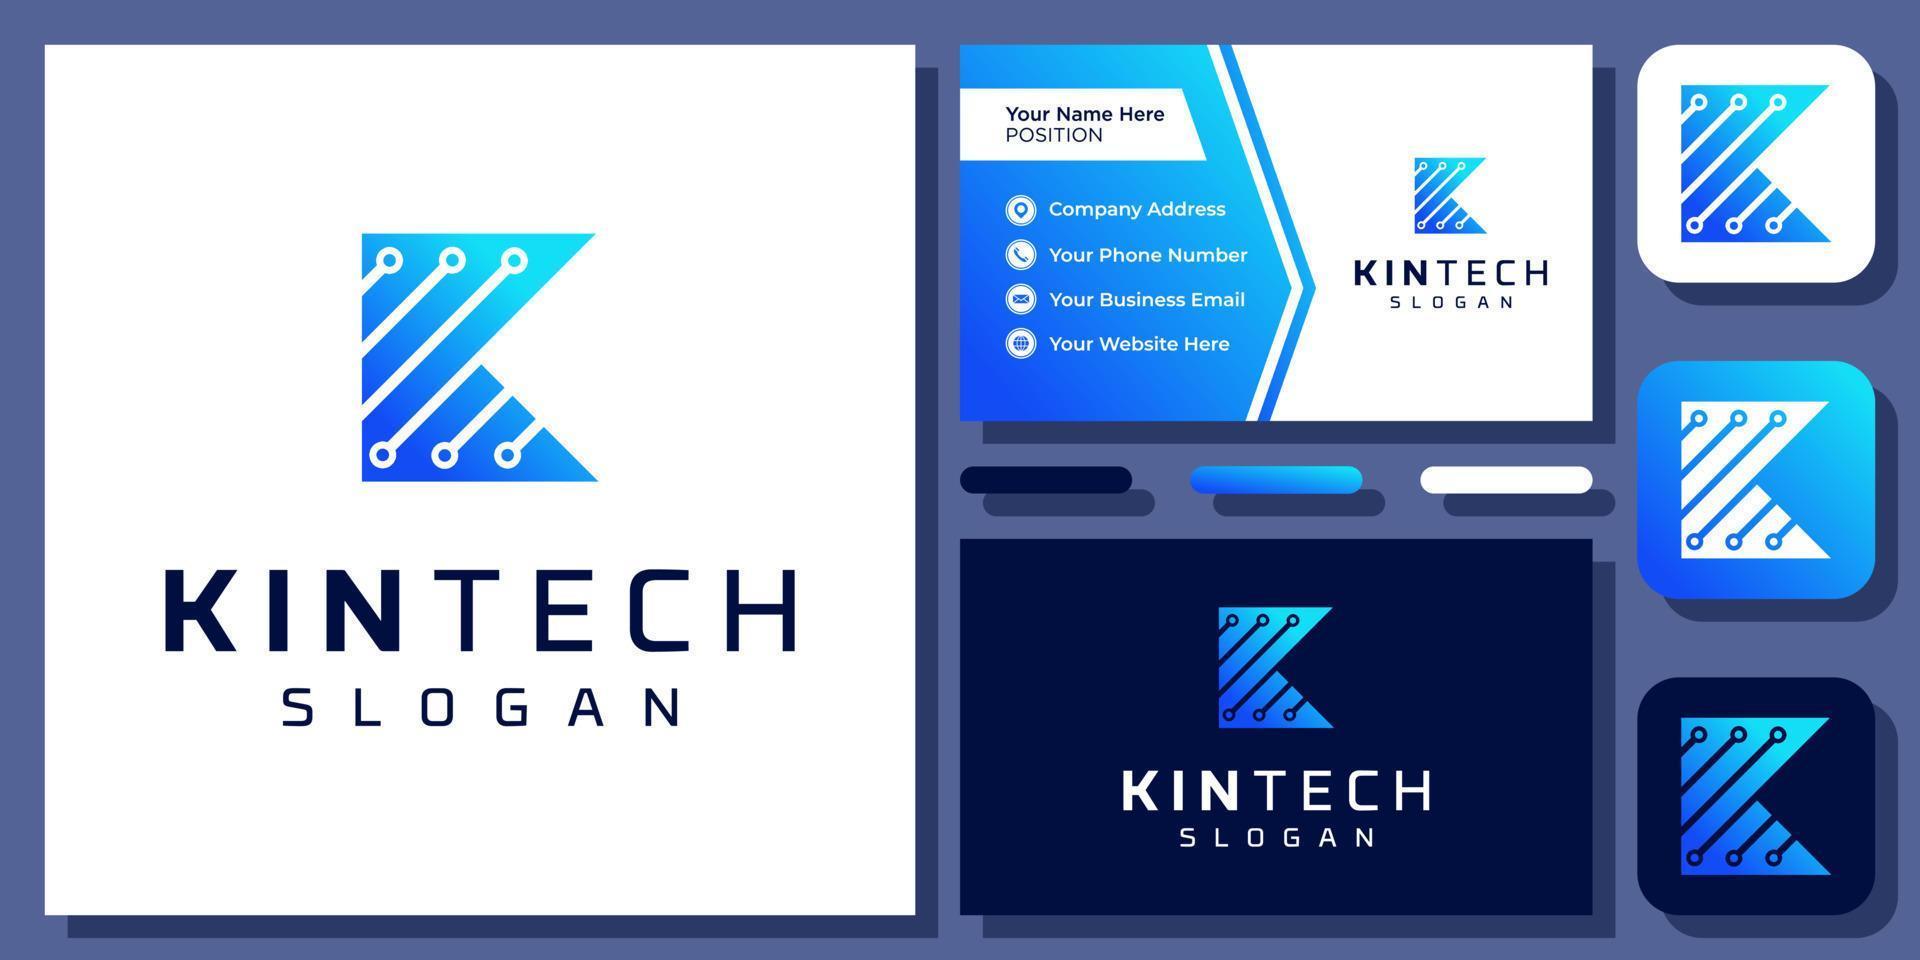 letra inicial k tecnologia conexão digital circuito molécula vector design de logotipo com cartão de visita